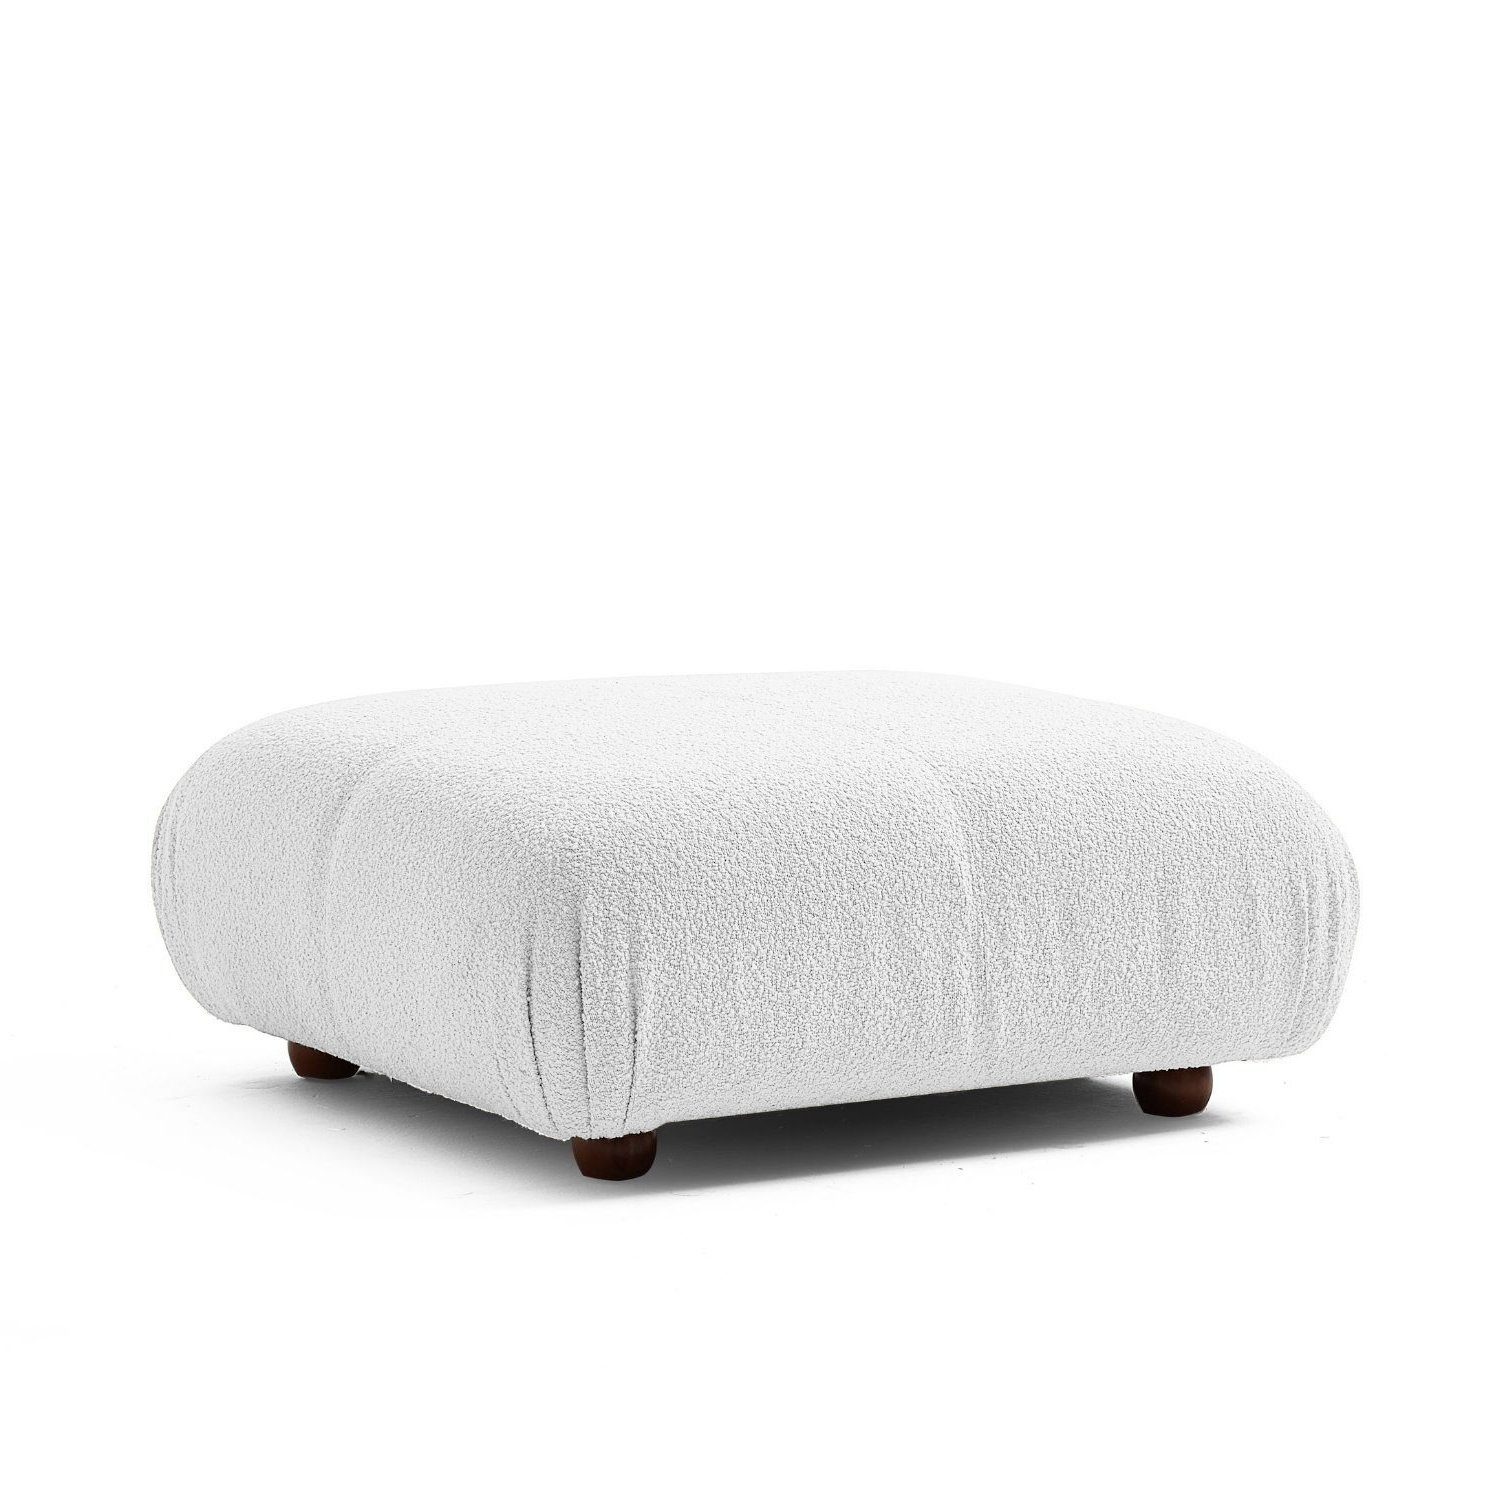 Touch me Sofa Knuffiges Sitzmöbel neueste Generation aus Komfortschaum Weiß-Lieferung und Aufbau im Preis enthalten!